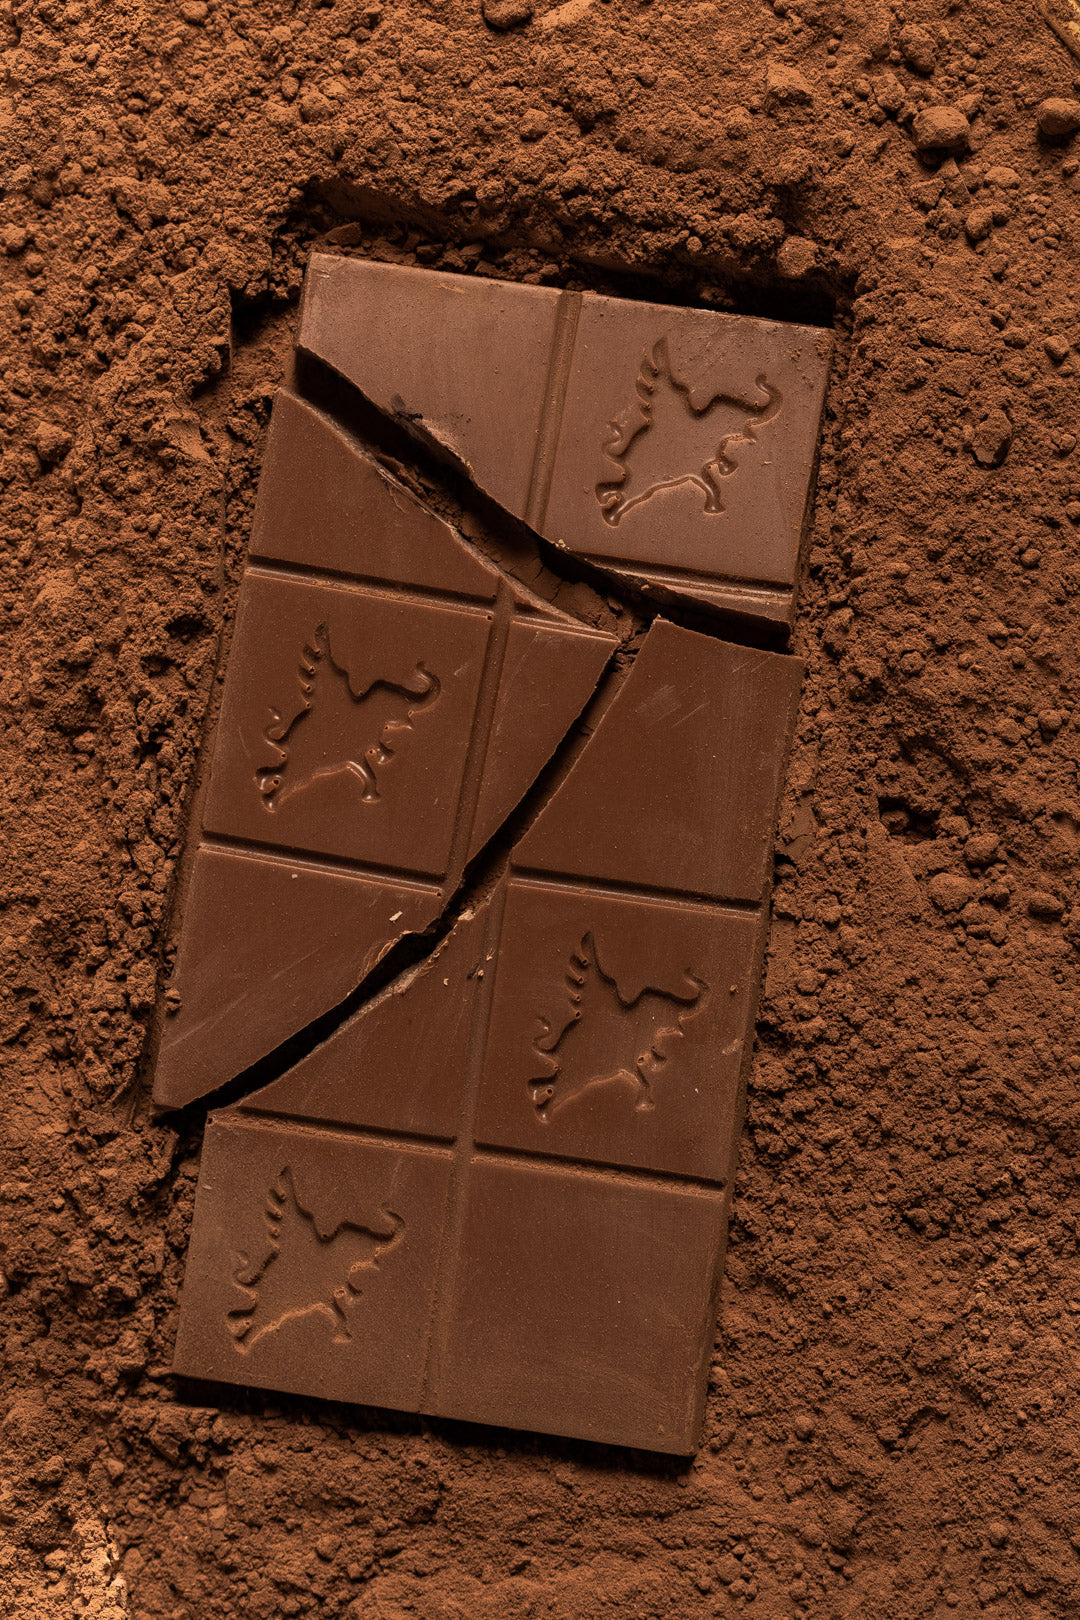 Chocolates sin azúcar añadido, bajos en carbohidratos y altos en proteínas